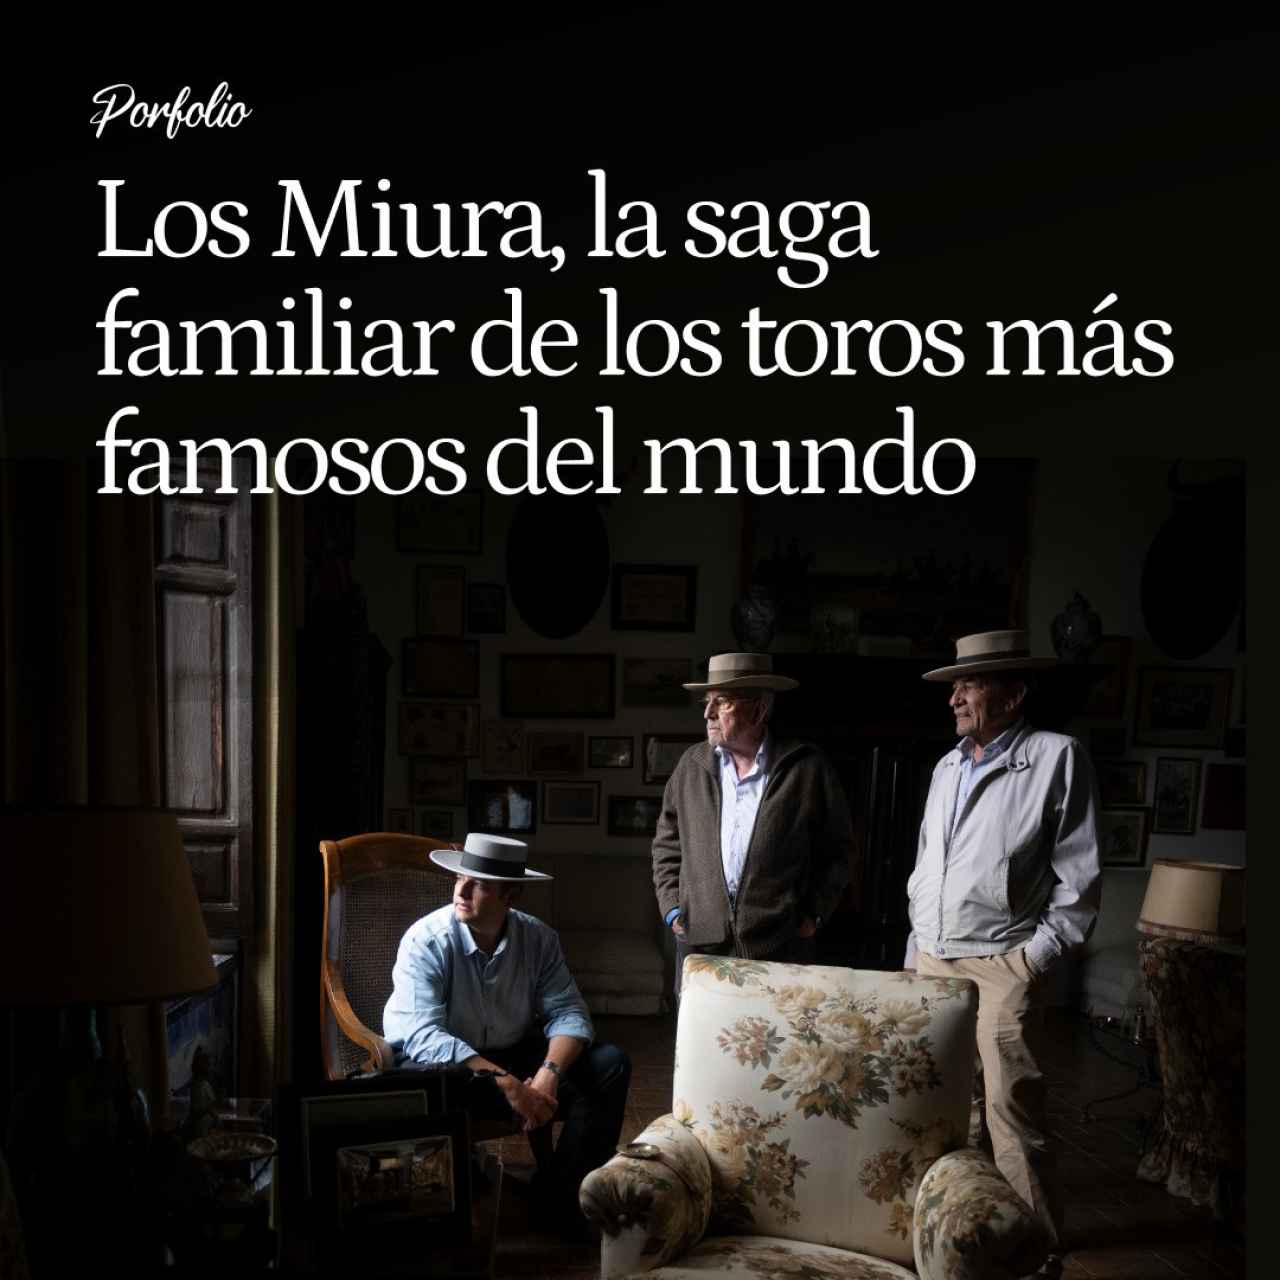 Los Miura, la saga familiar de los toros más famosos del mundo: 